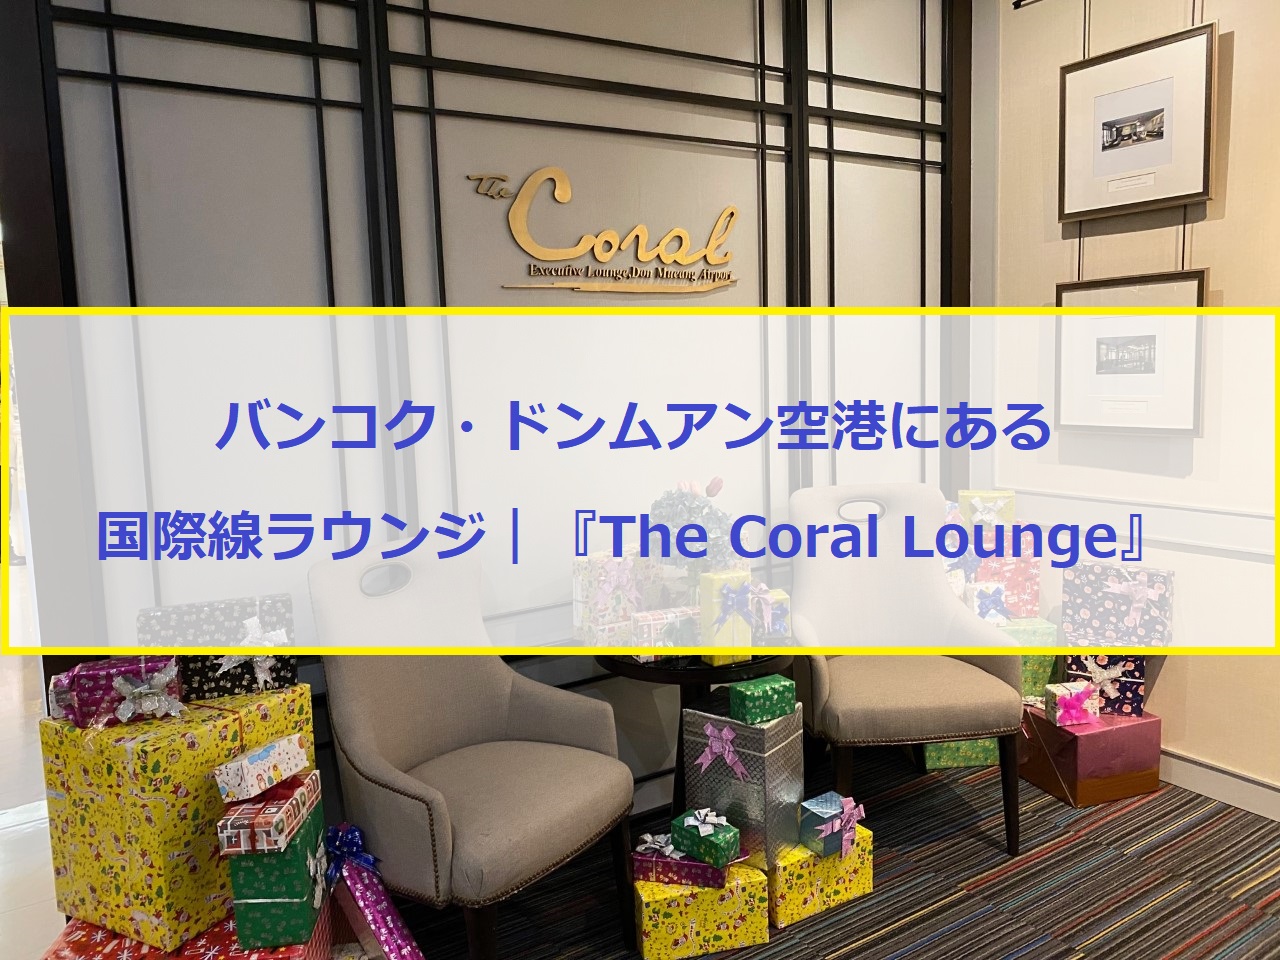 バンコク・ドンムアン空港にある国際線のラウンジご紹介｜『The Coral Lounge』